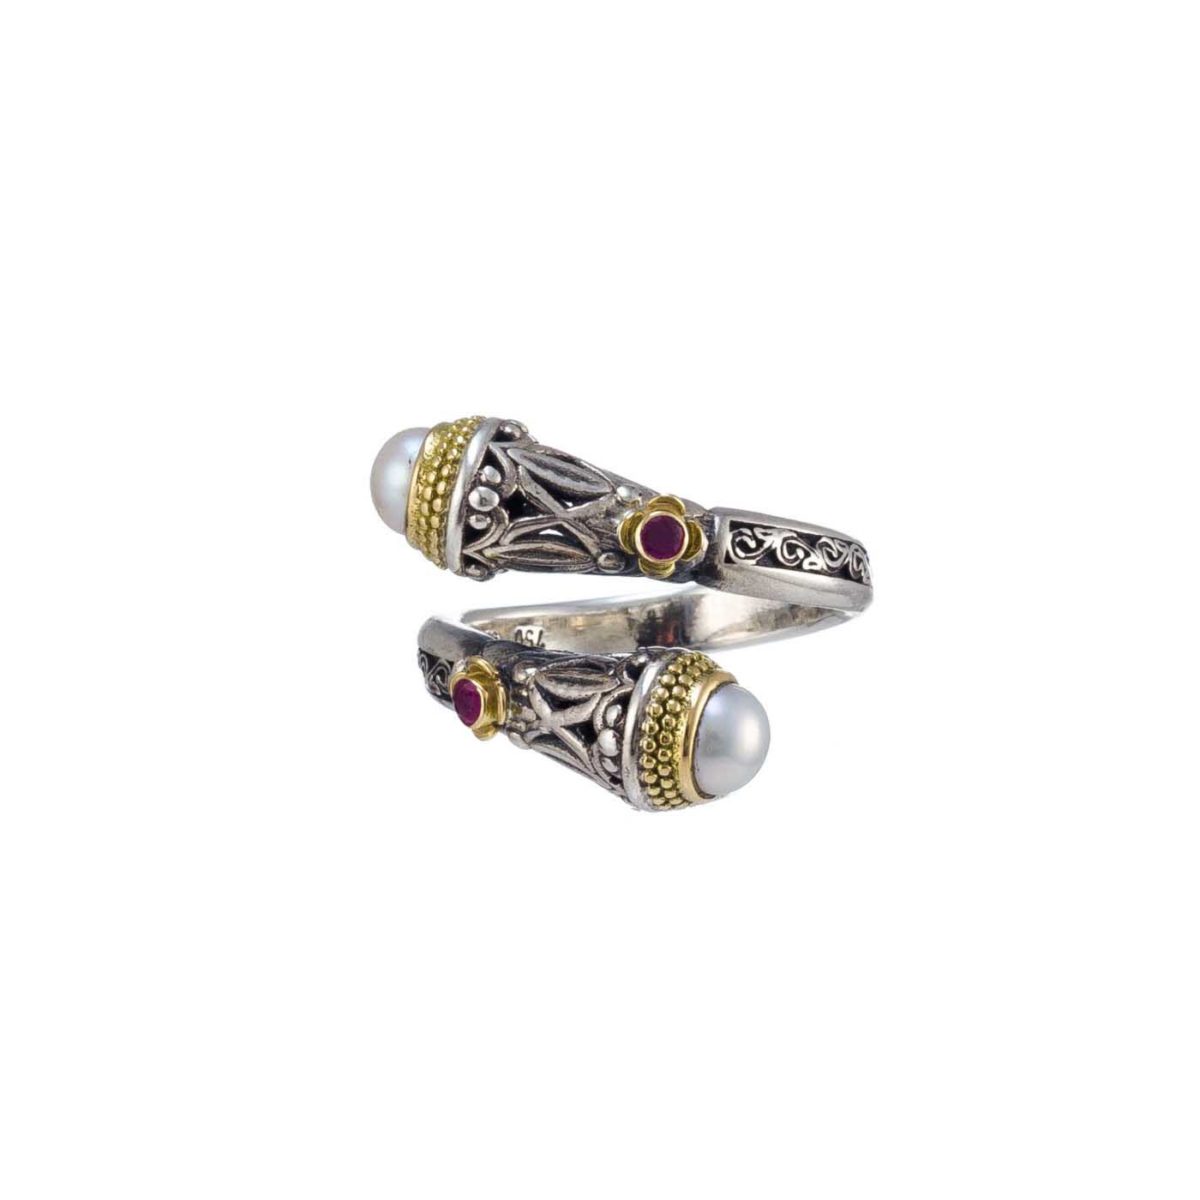 Ιδιαίτερο χειροποίητο δαχτυλίδι Gerochristos στολισμένο με μαργαριτάρια γλυκού νερού και ρουμπίνια